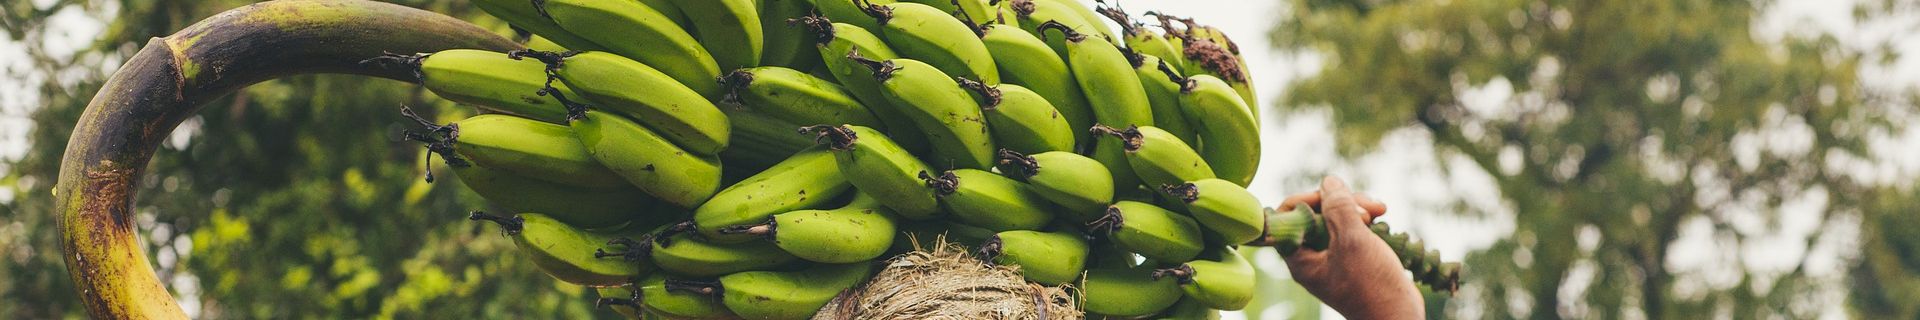 Mama transporting Banana plant